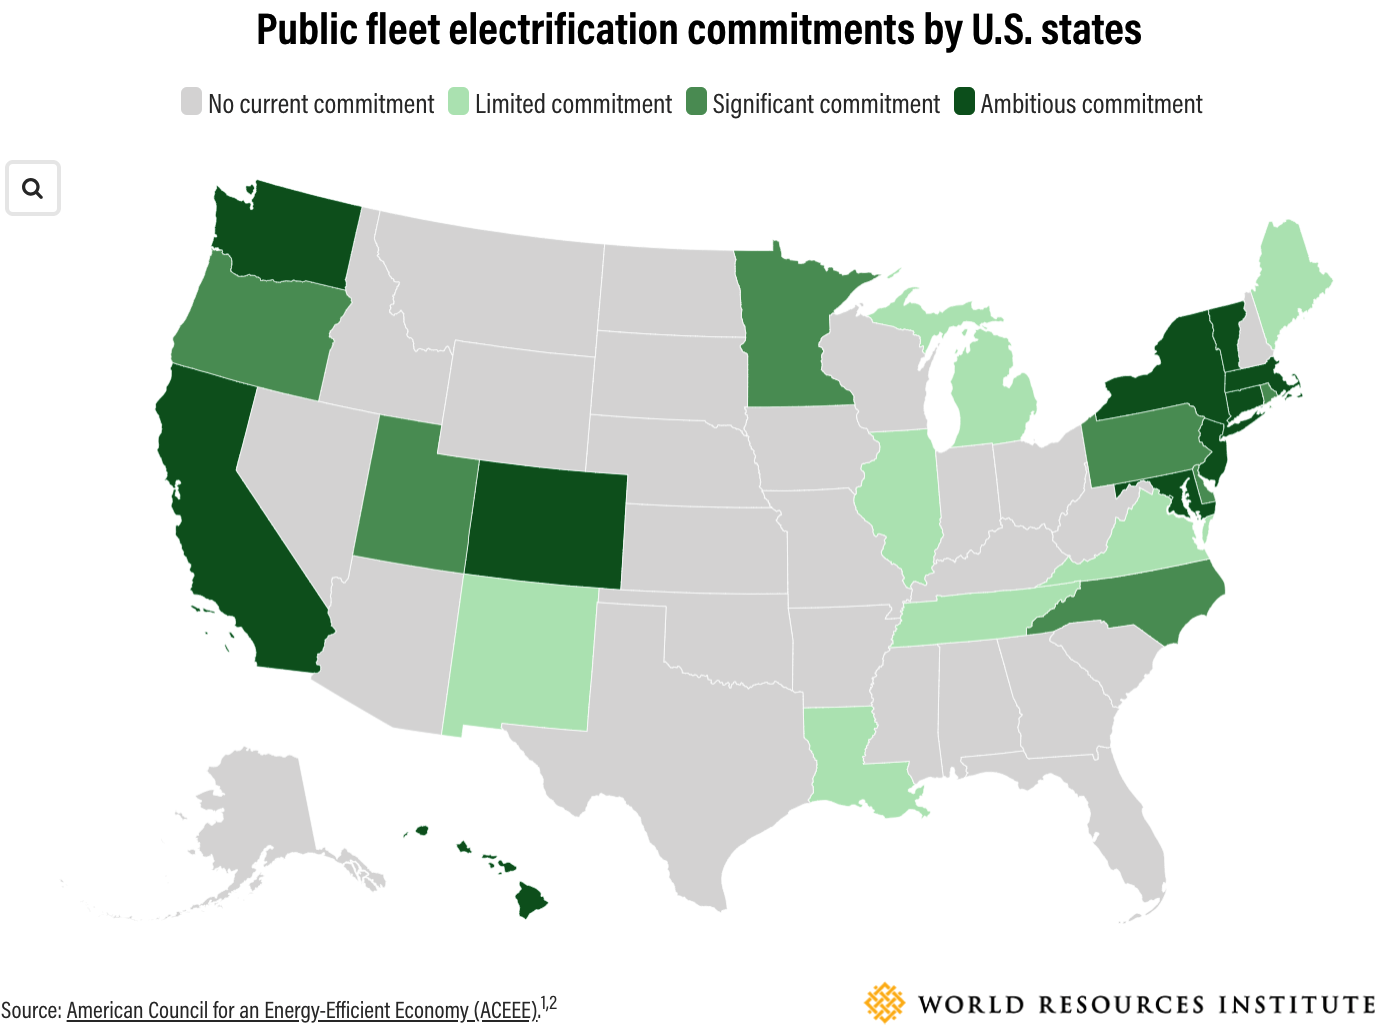 米国各州による公共車両の電化への取り組み。